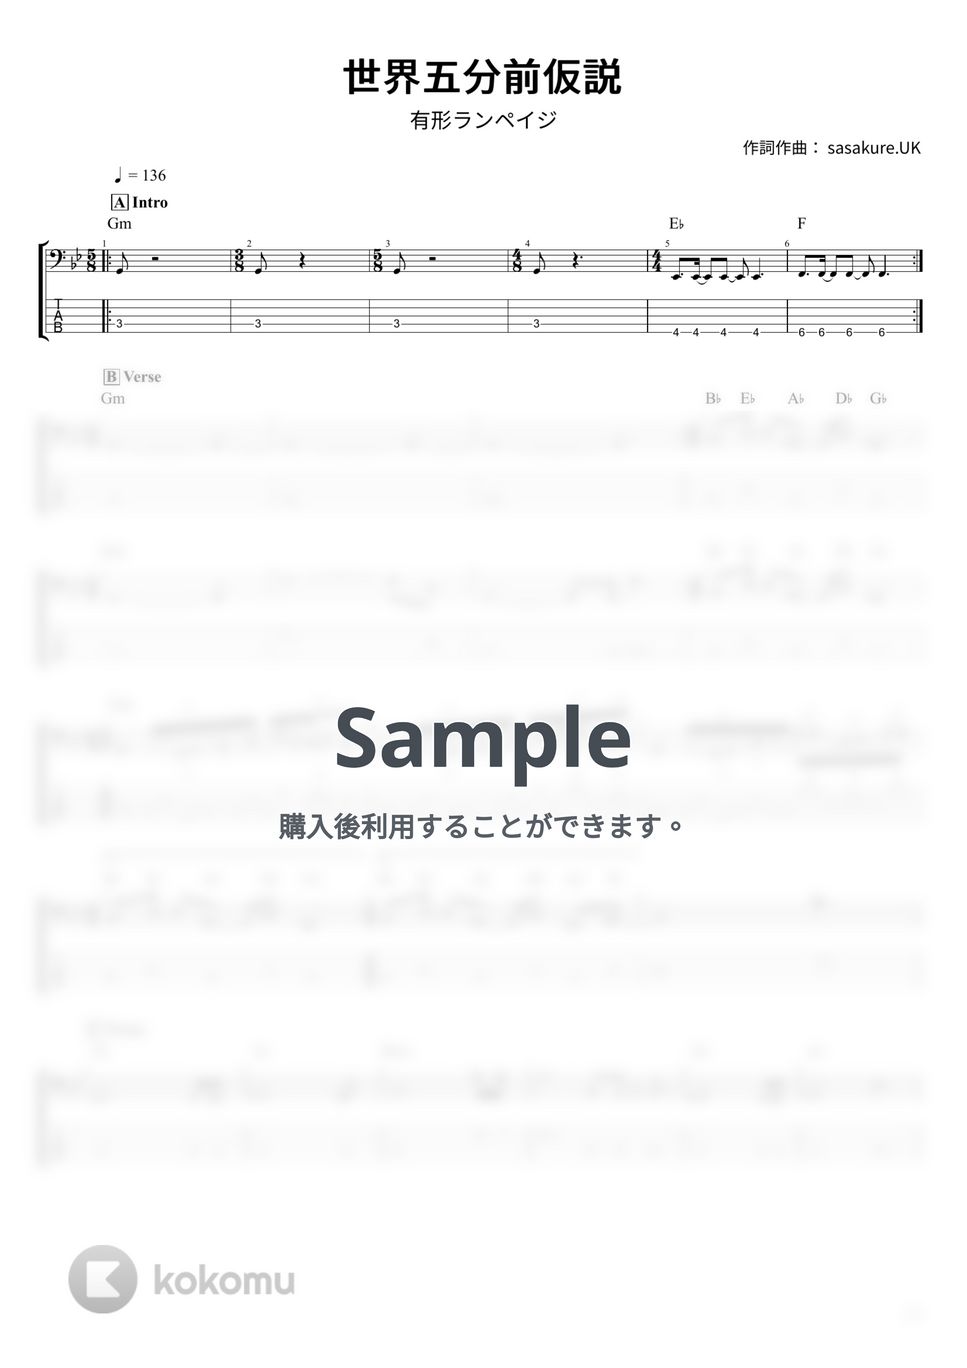 有形ランペイジ - 世界五分前仮説 (ベース Tab譜 5弦) by T’s bass score